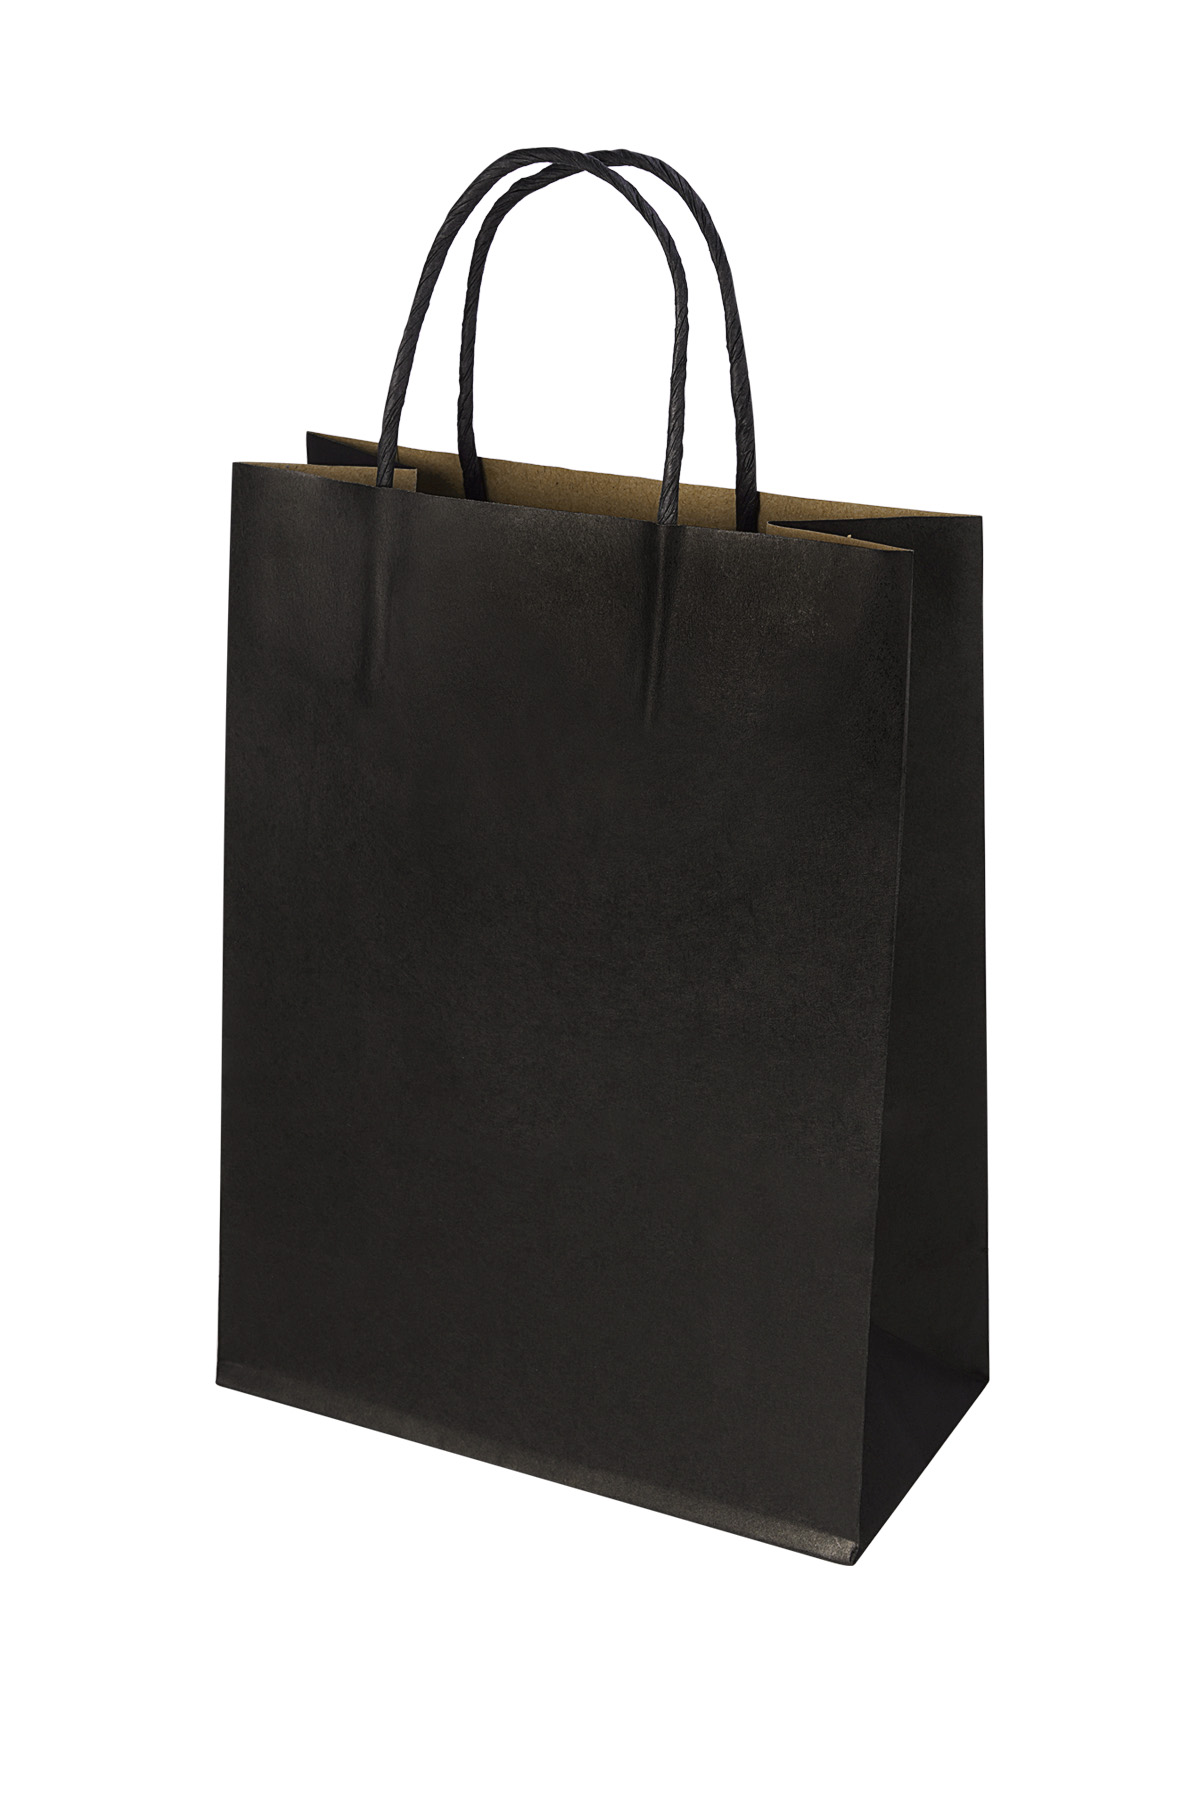 Bags plain 50 pieces large - black Paper